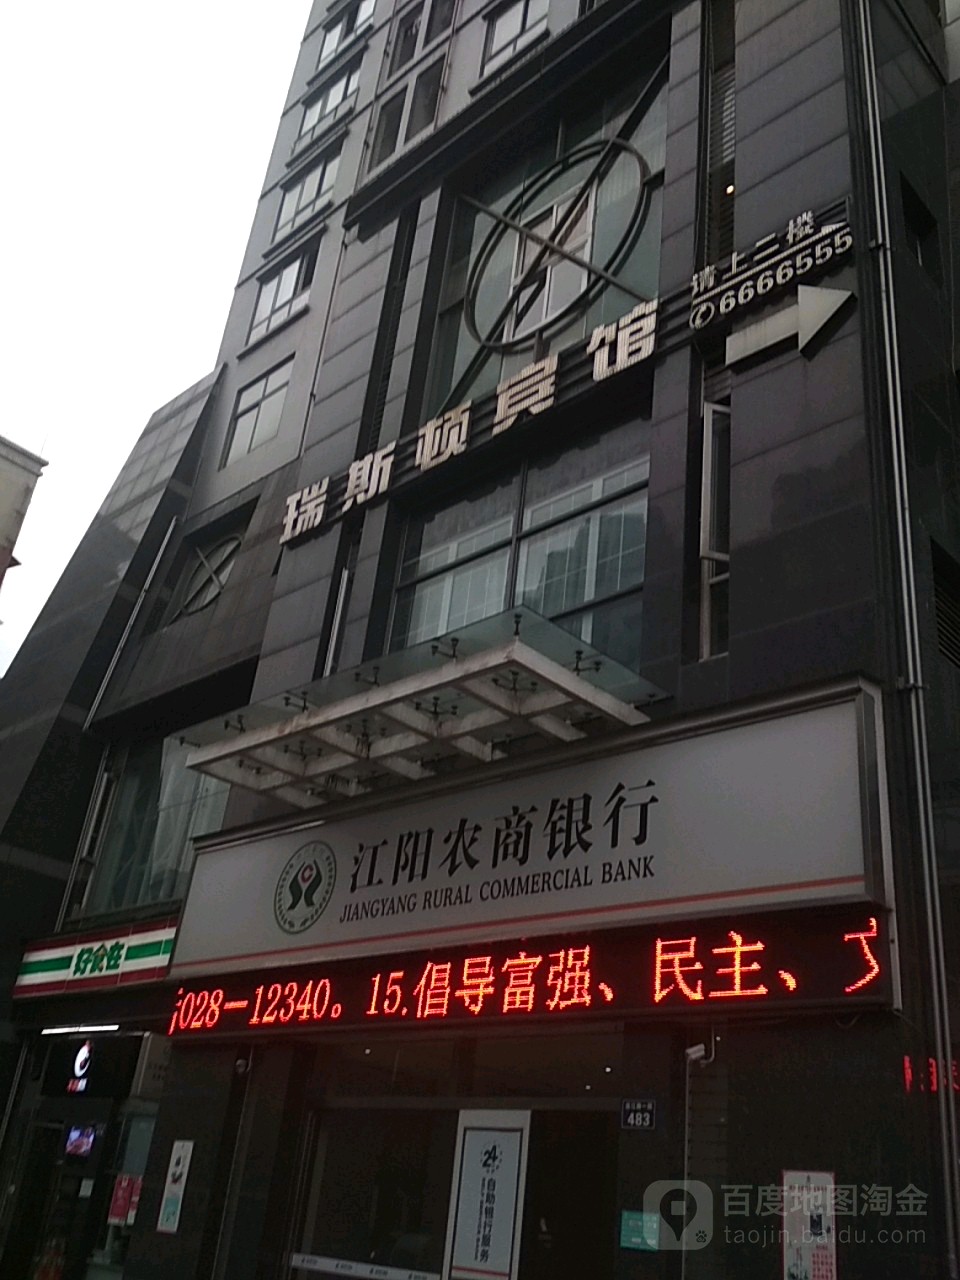 江陽農商銀行24小時自助銀行